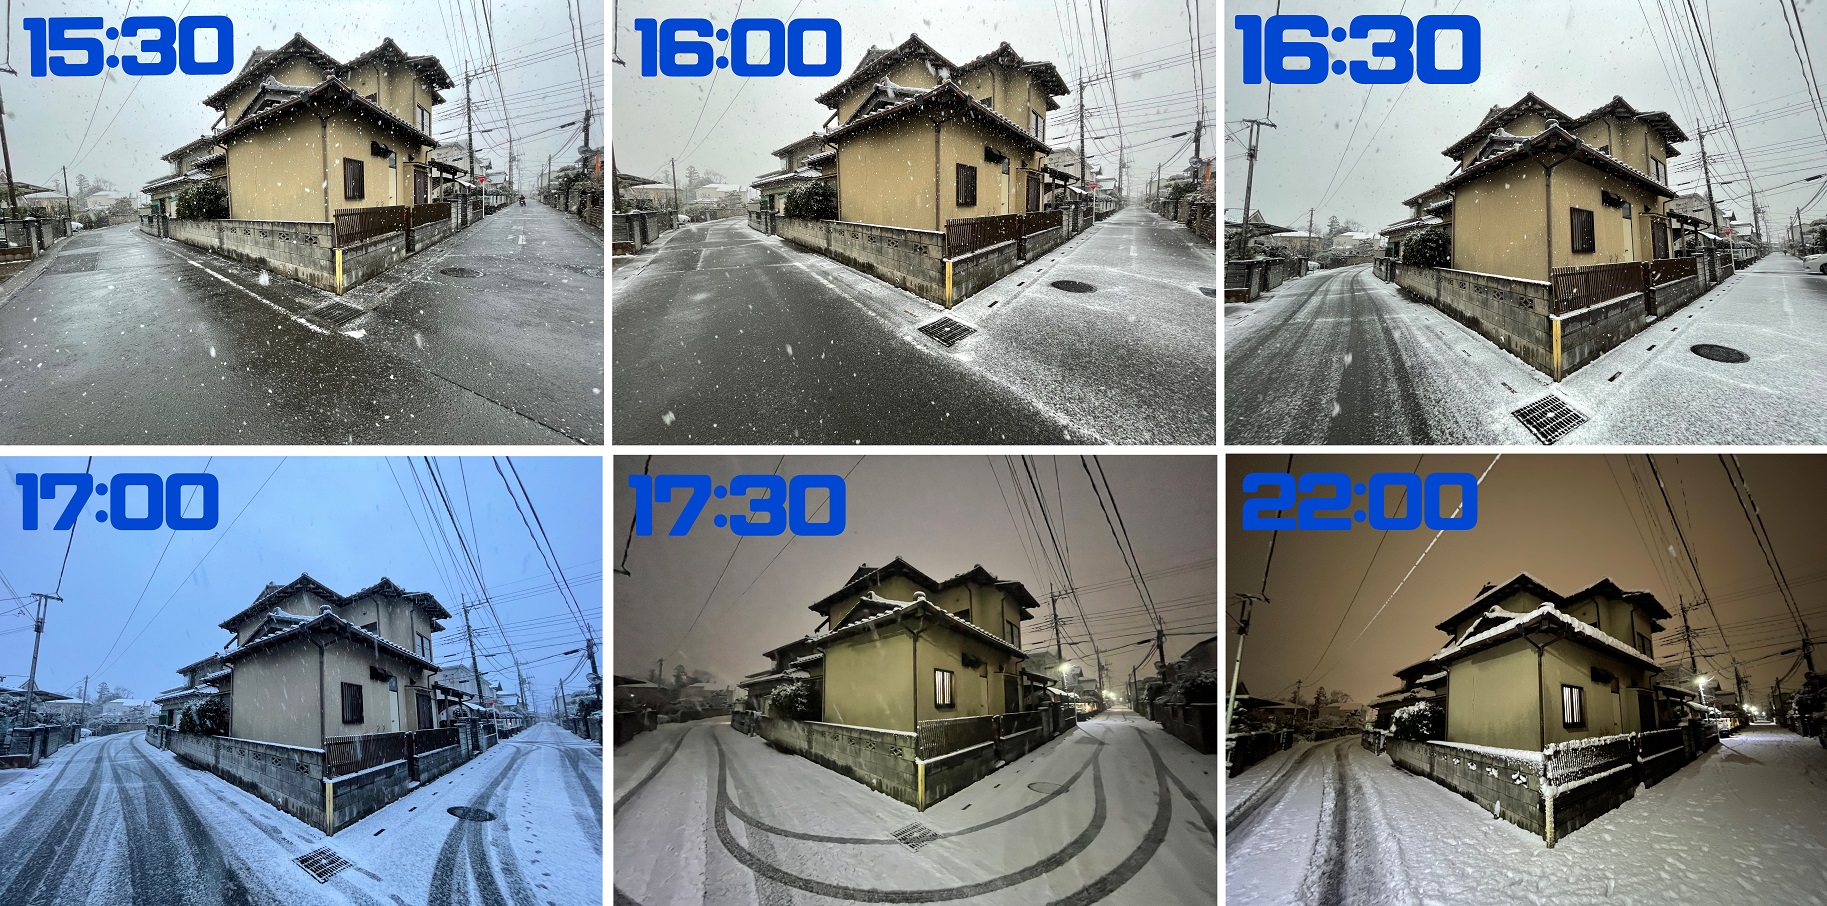 埼玉県でも大雪